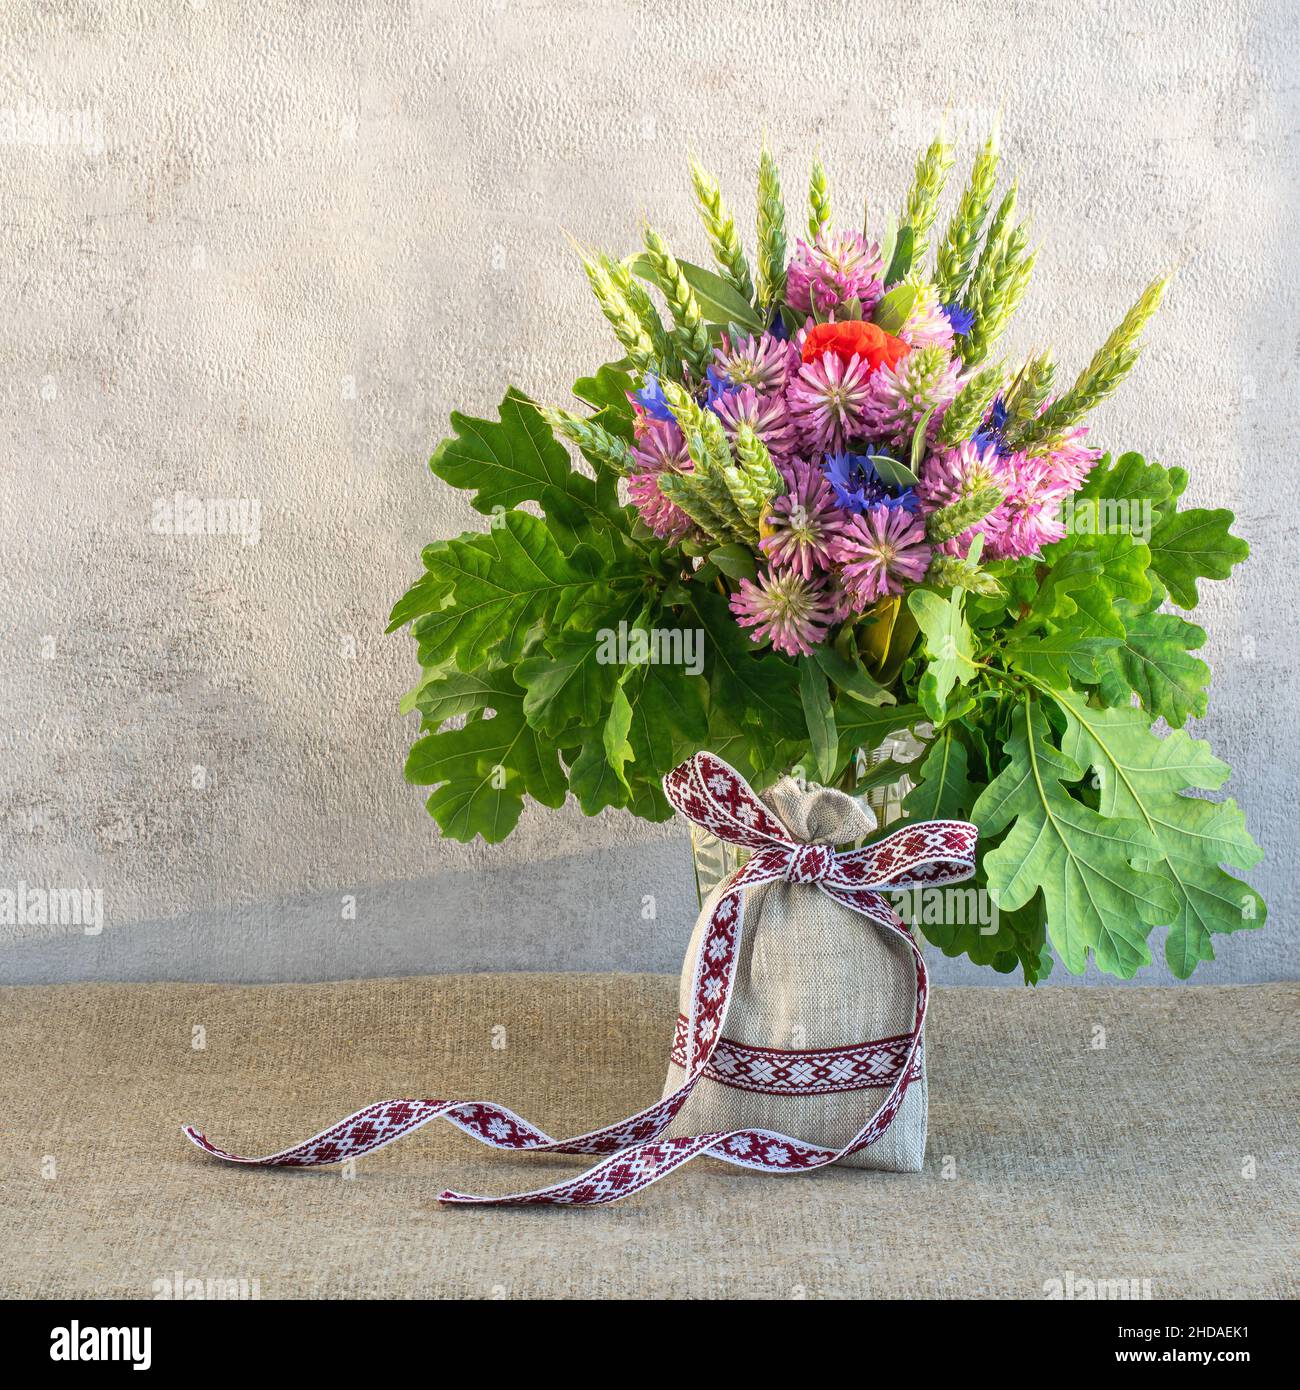 Allestimento fiori estivi per vacanze nazionali lettoni su sfondo chiaro, formato quadrato Foto Stock